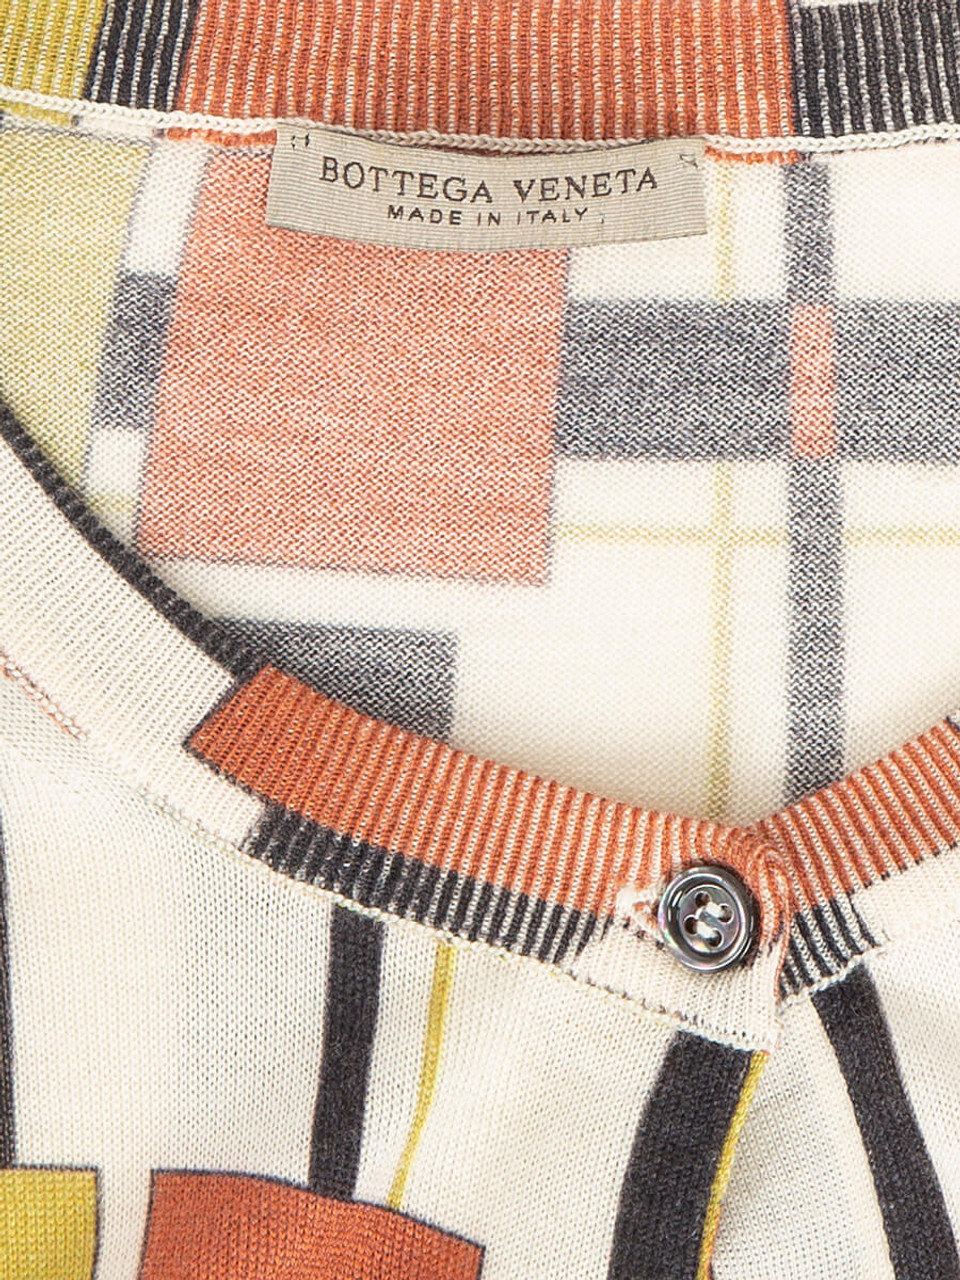 Bottega Veneta Women's Geometric Print Cardigan, Size 6 UK, Multicolour, Cashmere